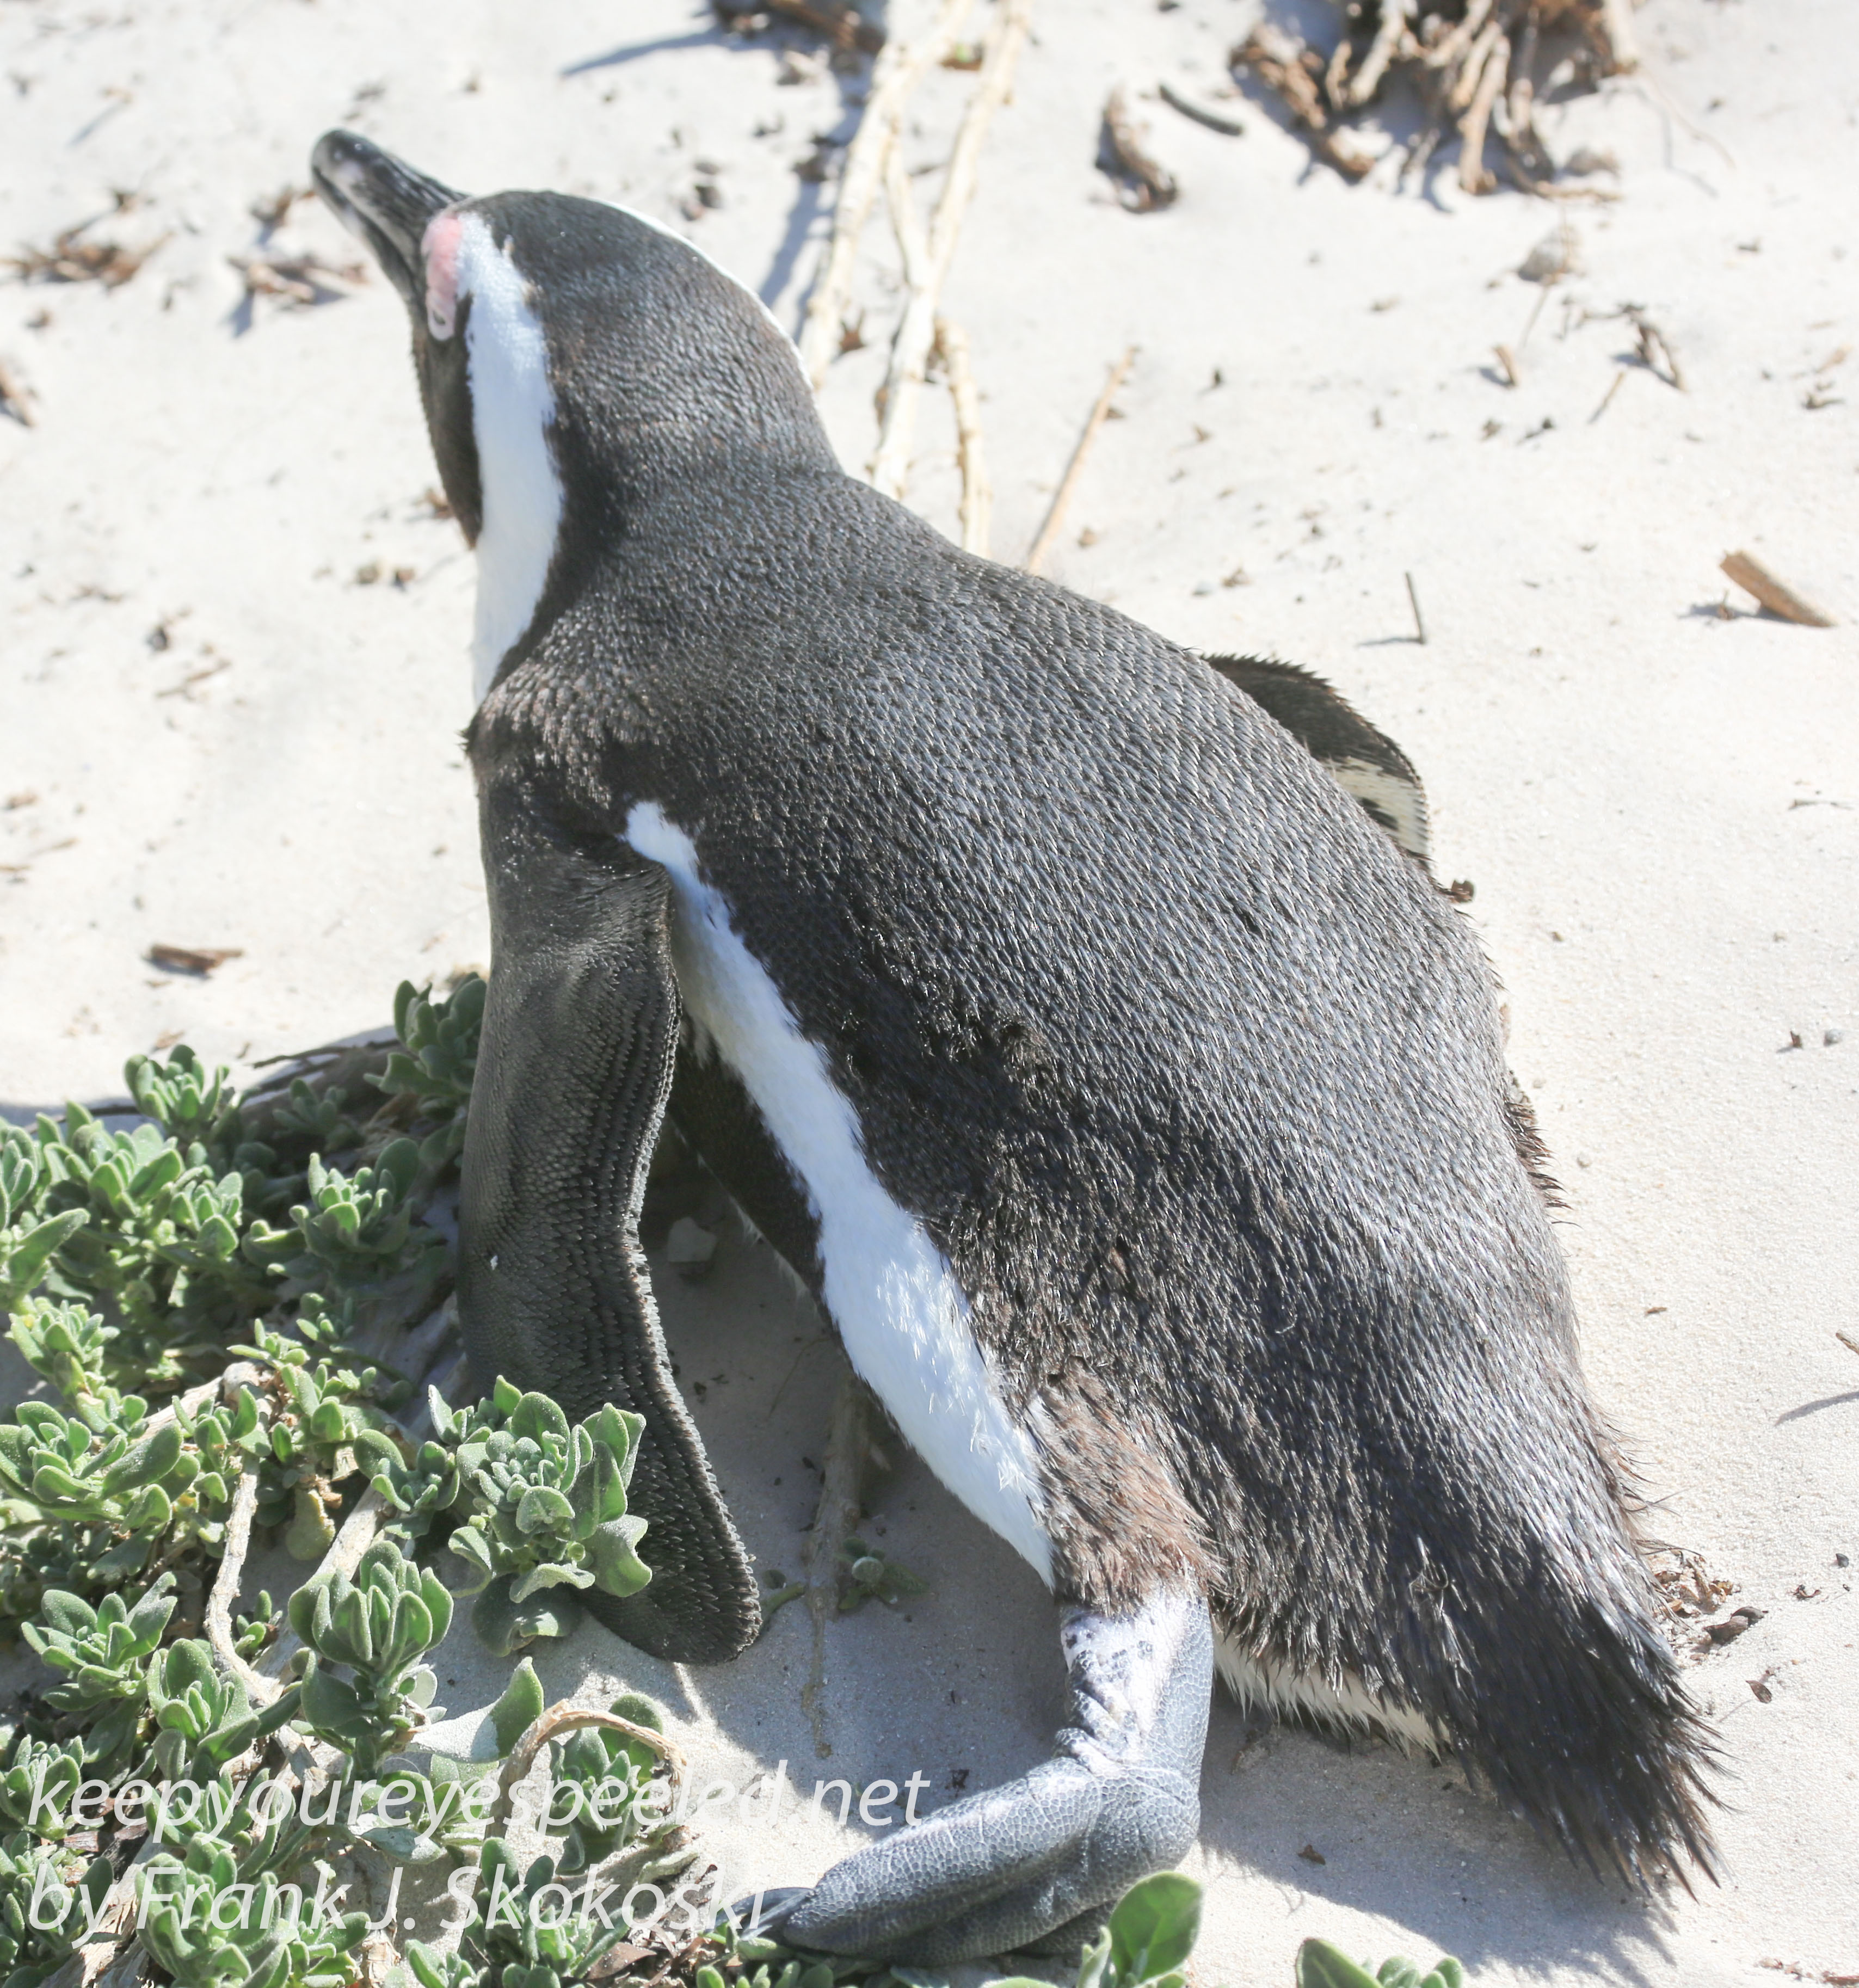 Cape Point penguins -16